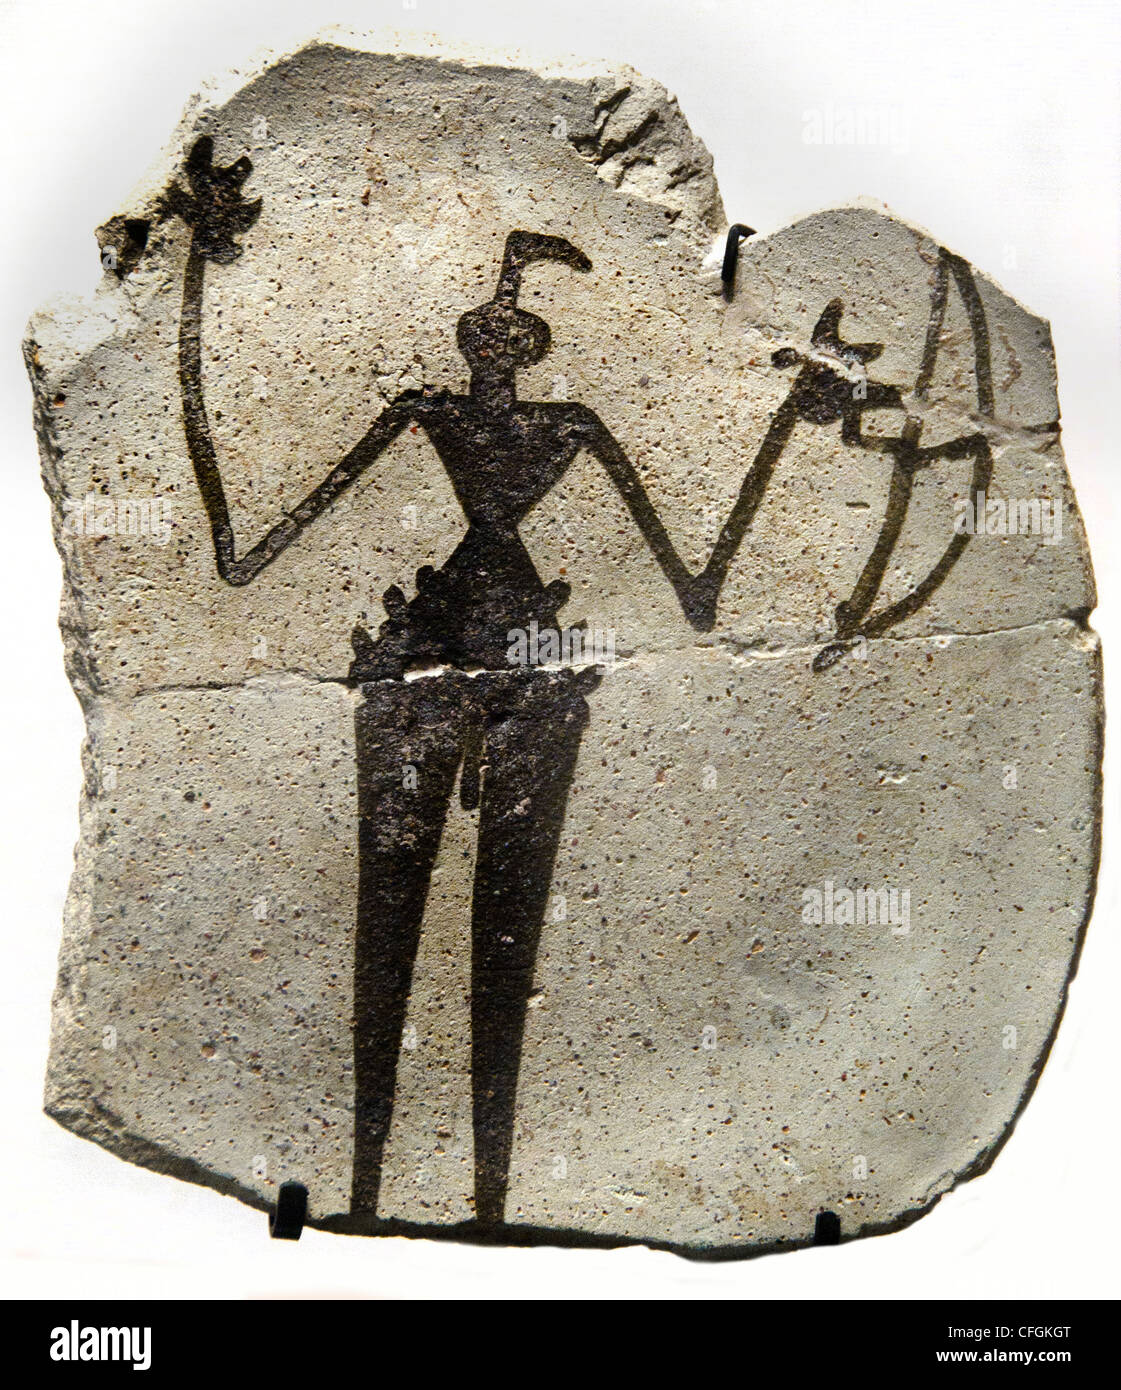 Malerei unter freiem Himmel eines Jägers, ausgestattet mit einem Bogen 5 Illennium Tepe Djowi Ghassoulien Chalkolithikum Palästina 4500 – 3500 v. Chr. Stockfoto